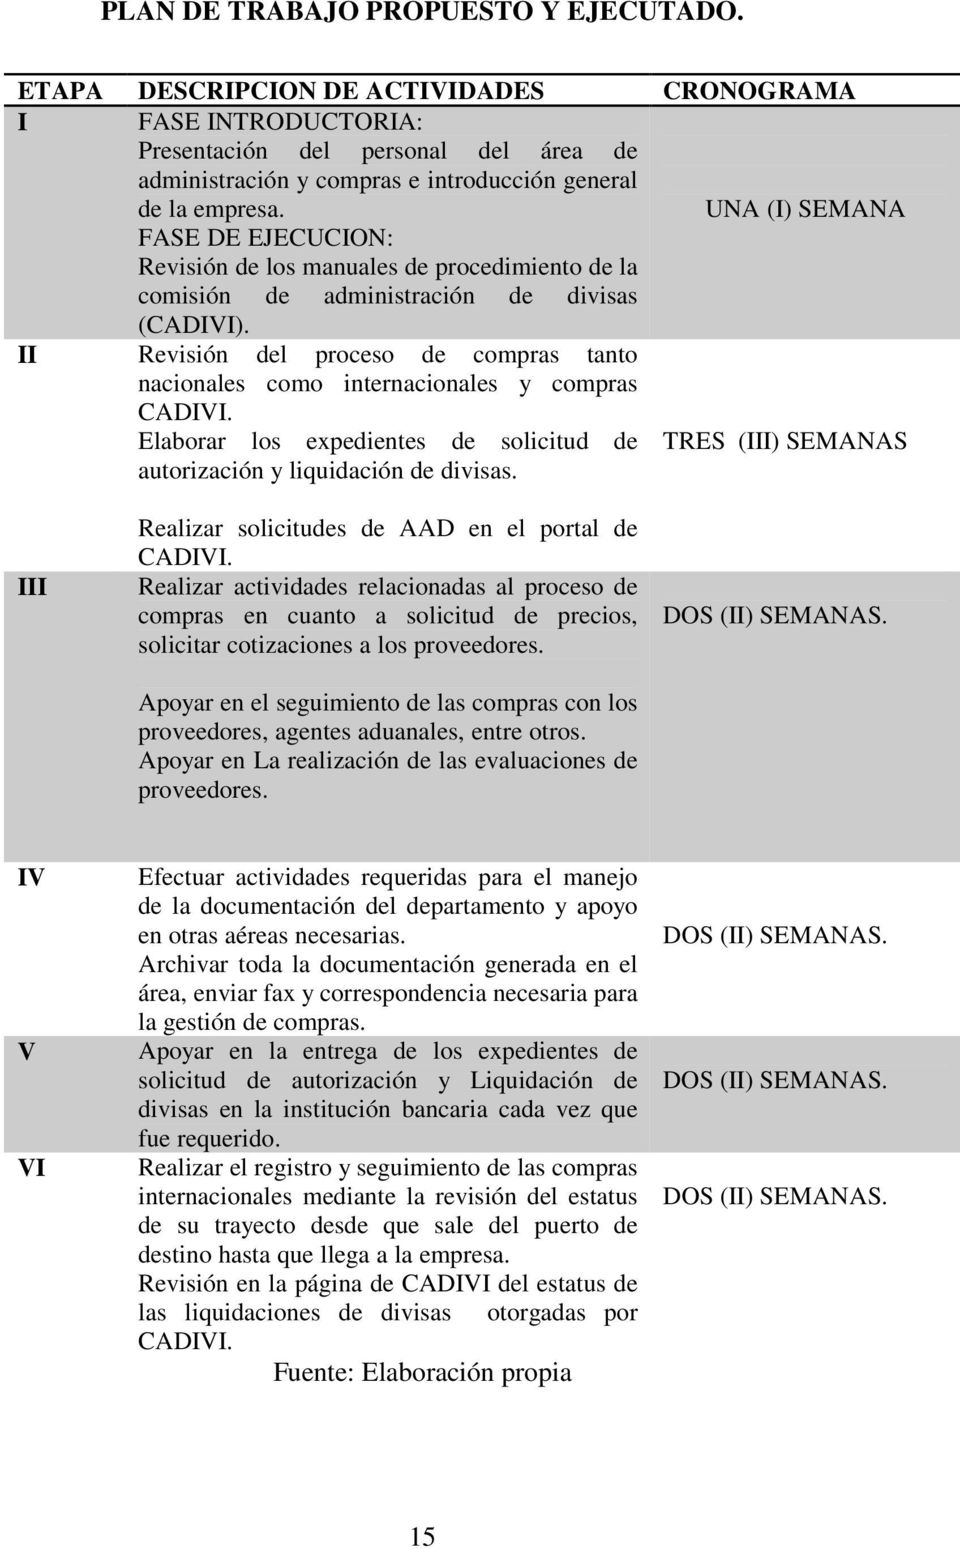 UNA (I) SEMANA FASE DE EJECUCION: Revisión de los manuales de procedimiento de la comisión de administración de divisas (CADIVI).